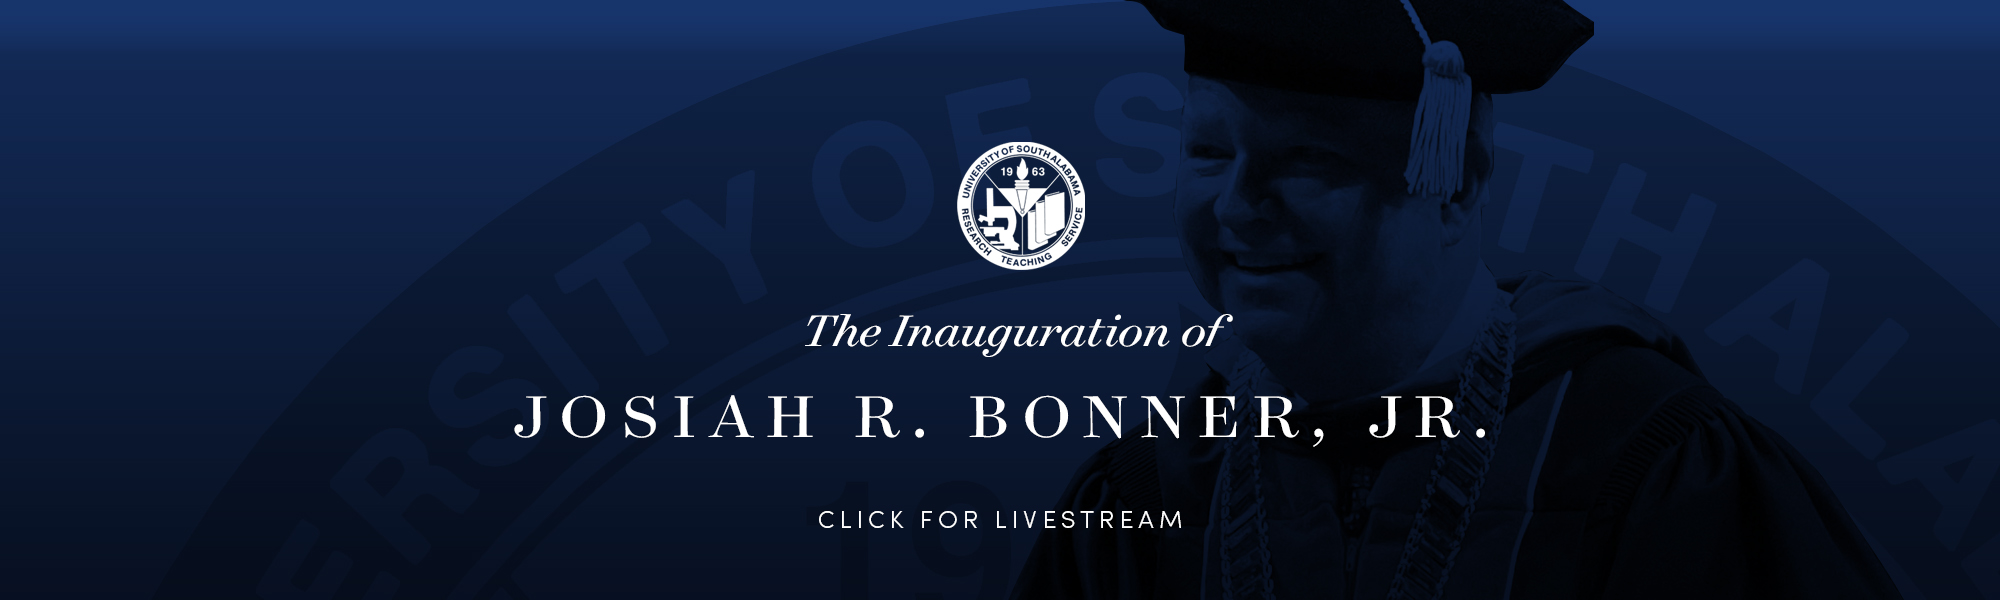 President Bonner Inauguration